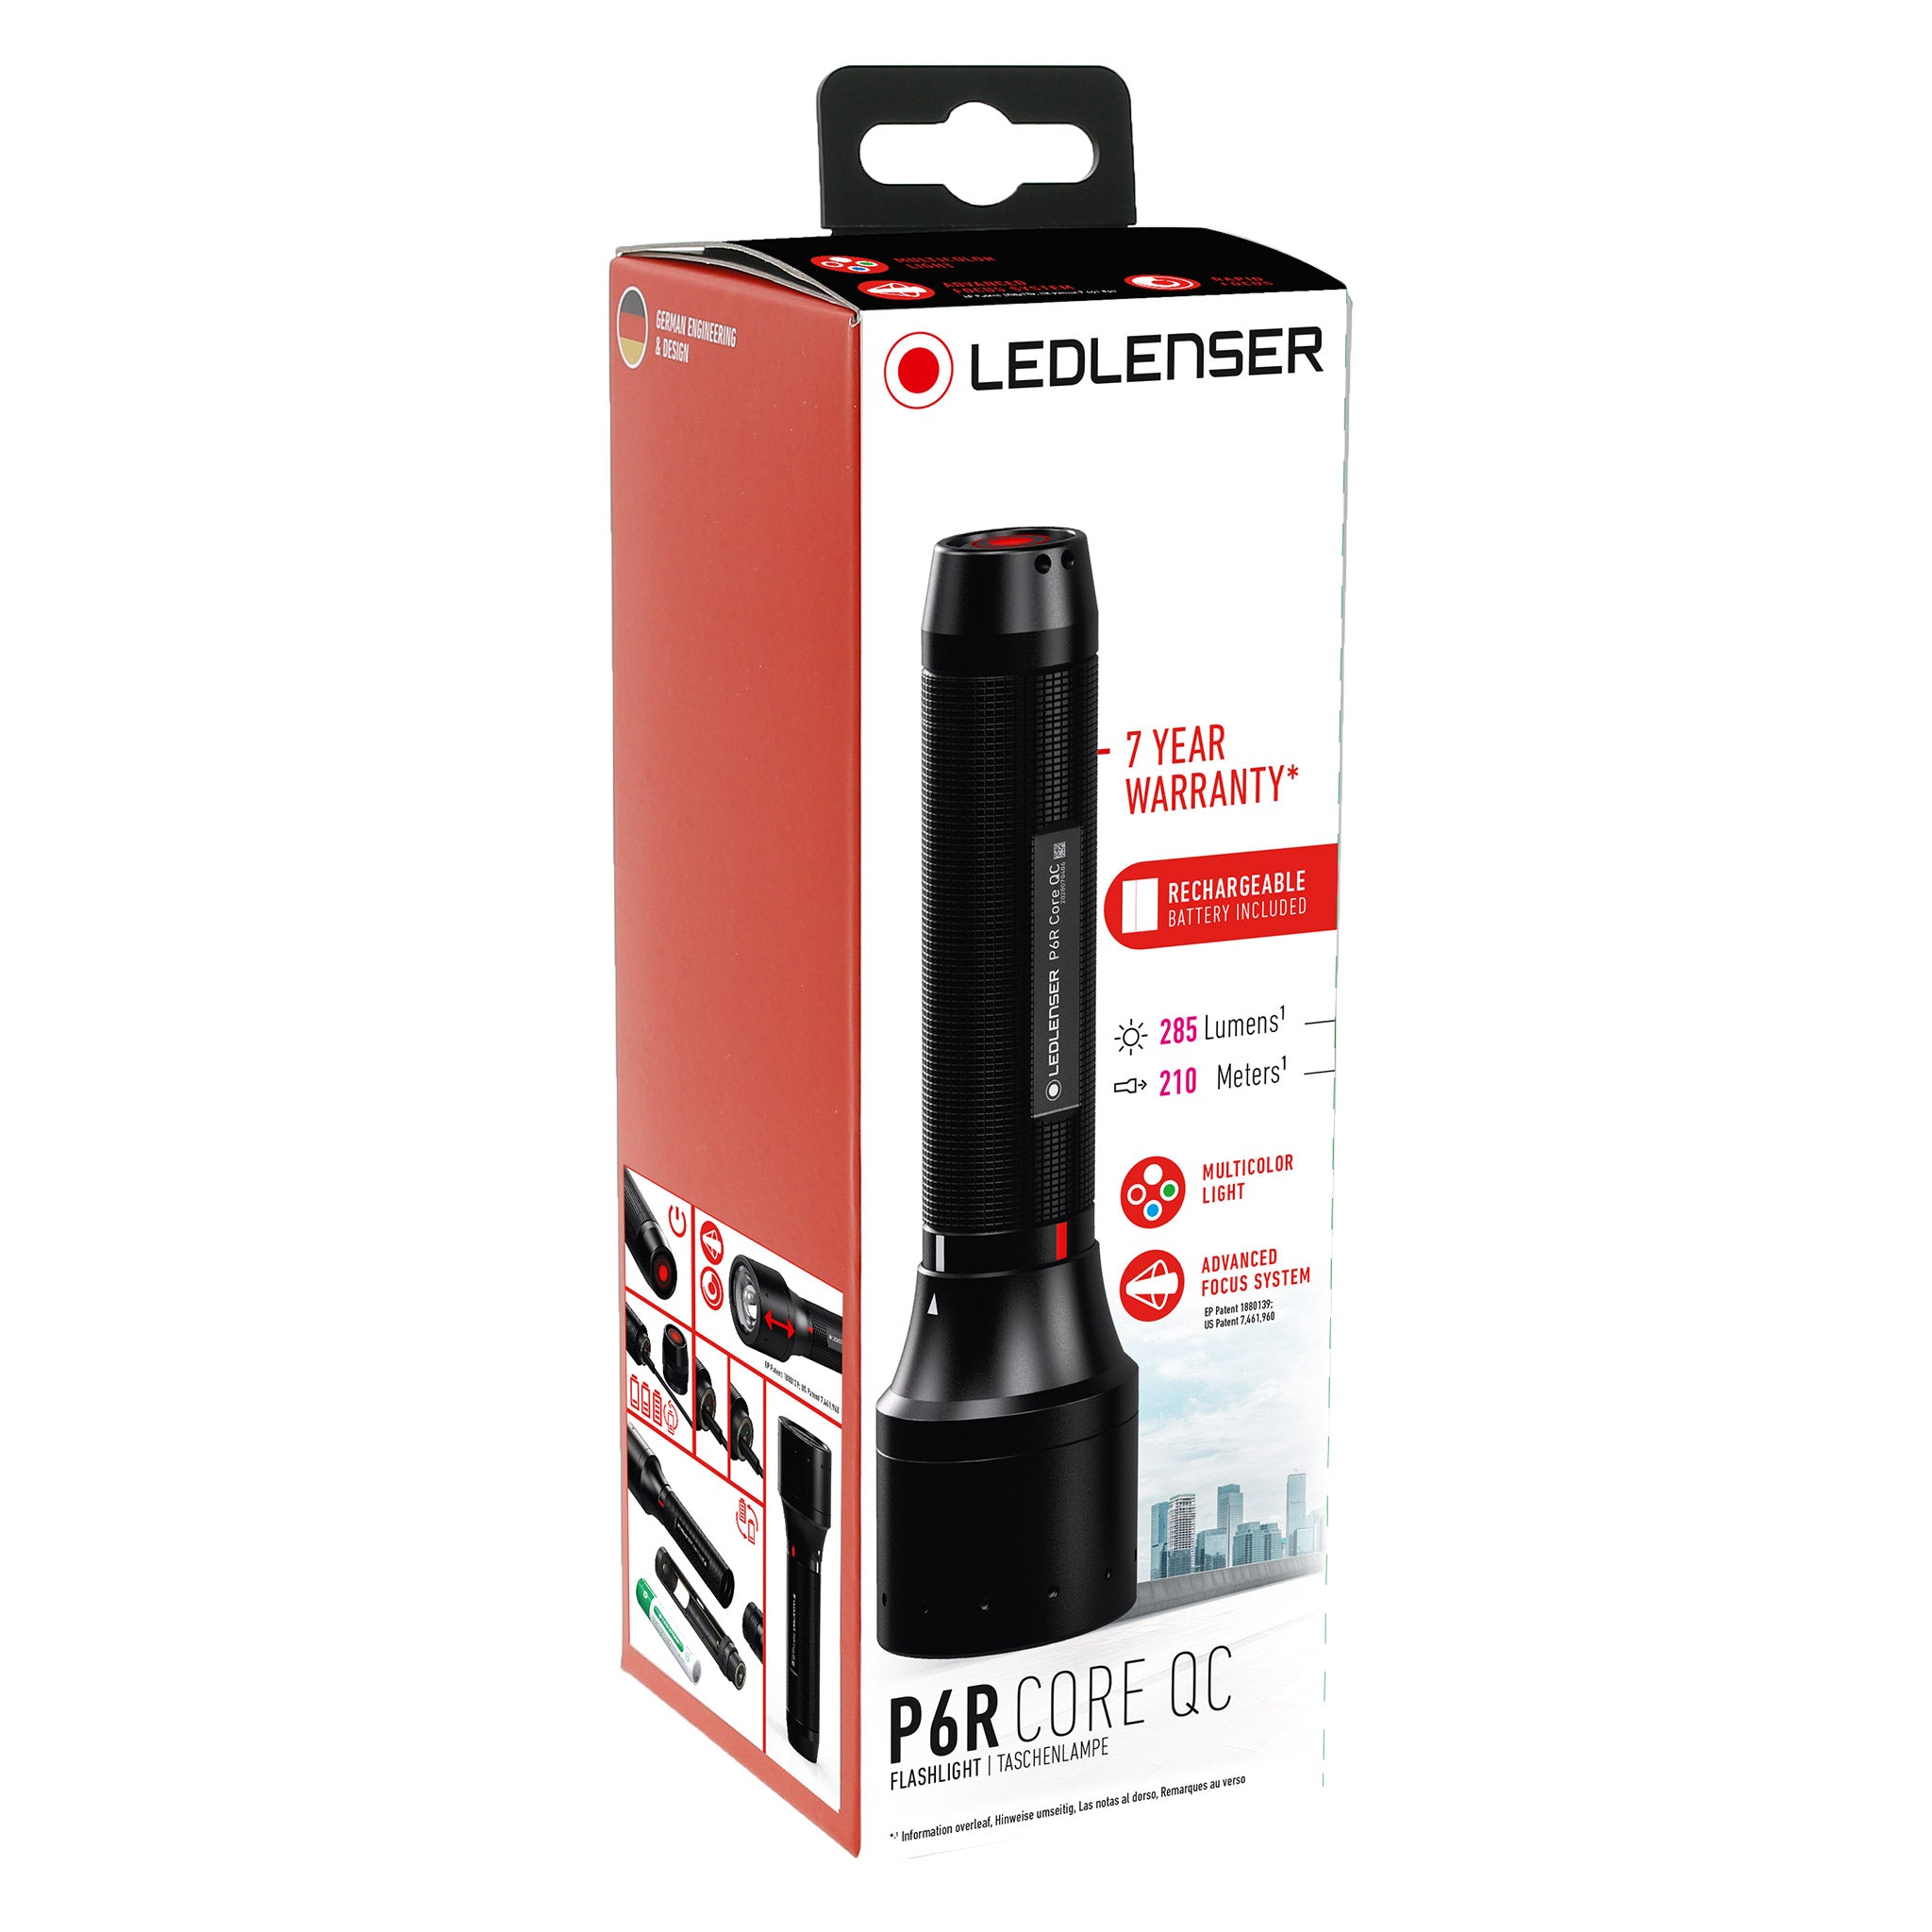 Lampe torche LED - LedLenser® P6R Core QC - 4 couleurs - Rechargeable